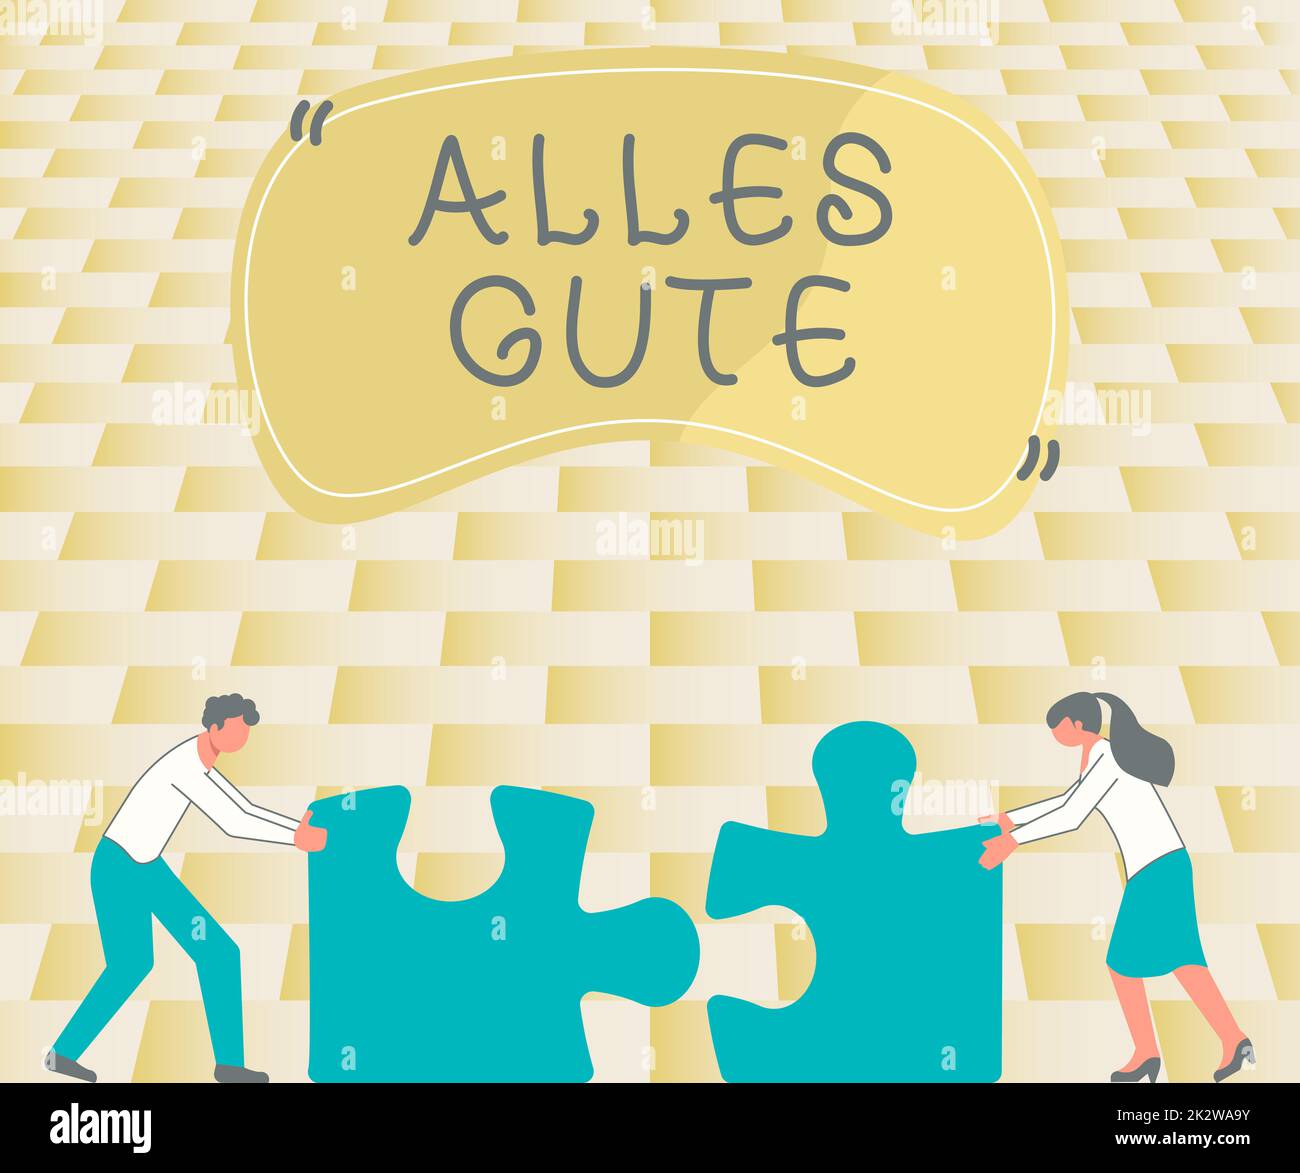 Affiche Alles Gute. Concept signifiant traduction allemande tout le  meilleur pour l'anniversaire ou toute occasion collègues Conencting deux  pièces Jigsaw Puzzle ensemble montrant Teamwork Photo Stock - Alamy